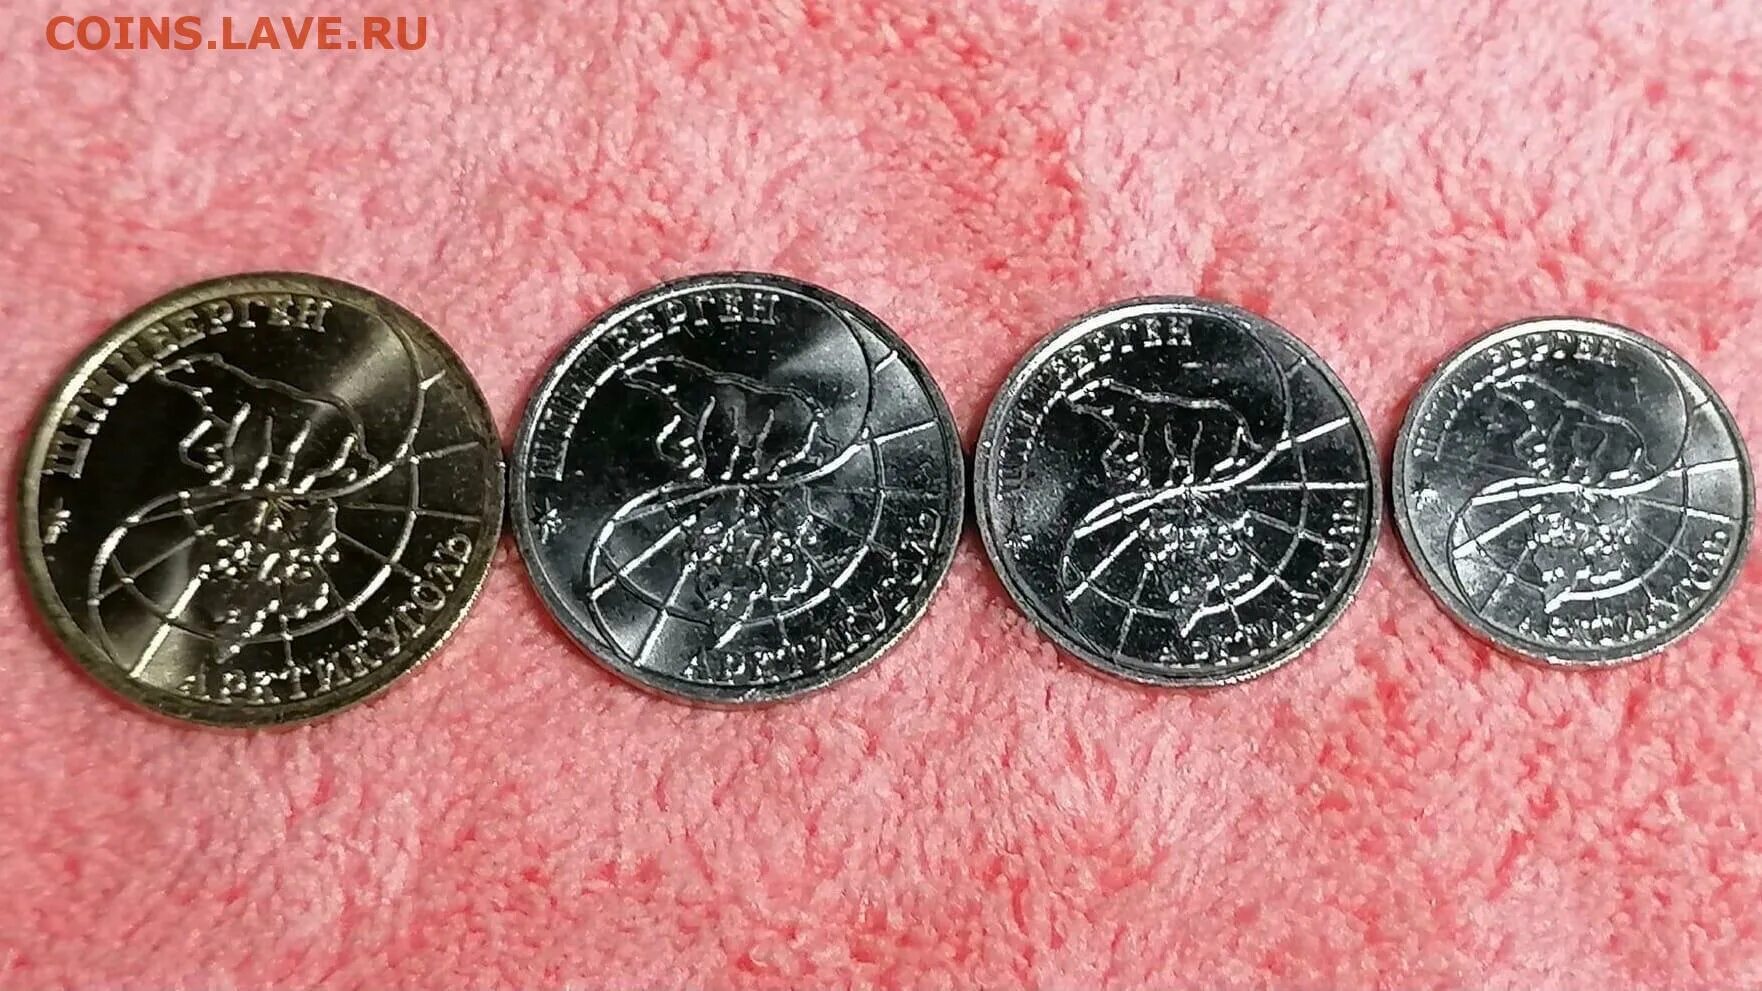 10 00 мск 2. Самаркандские монеты.